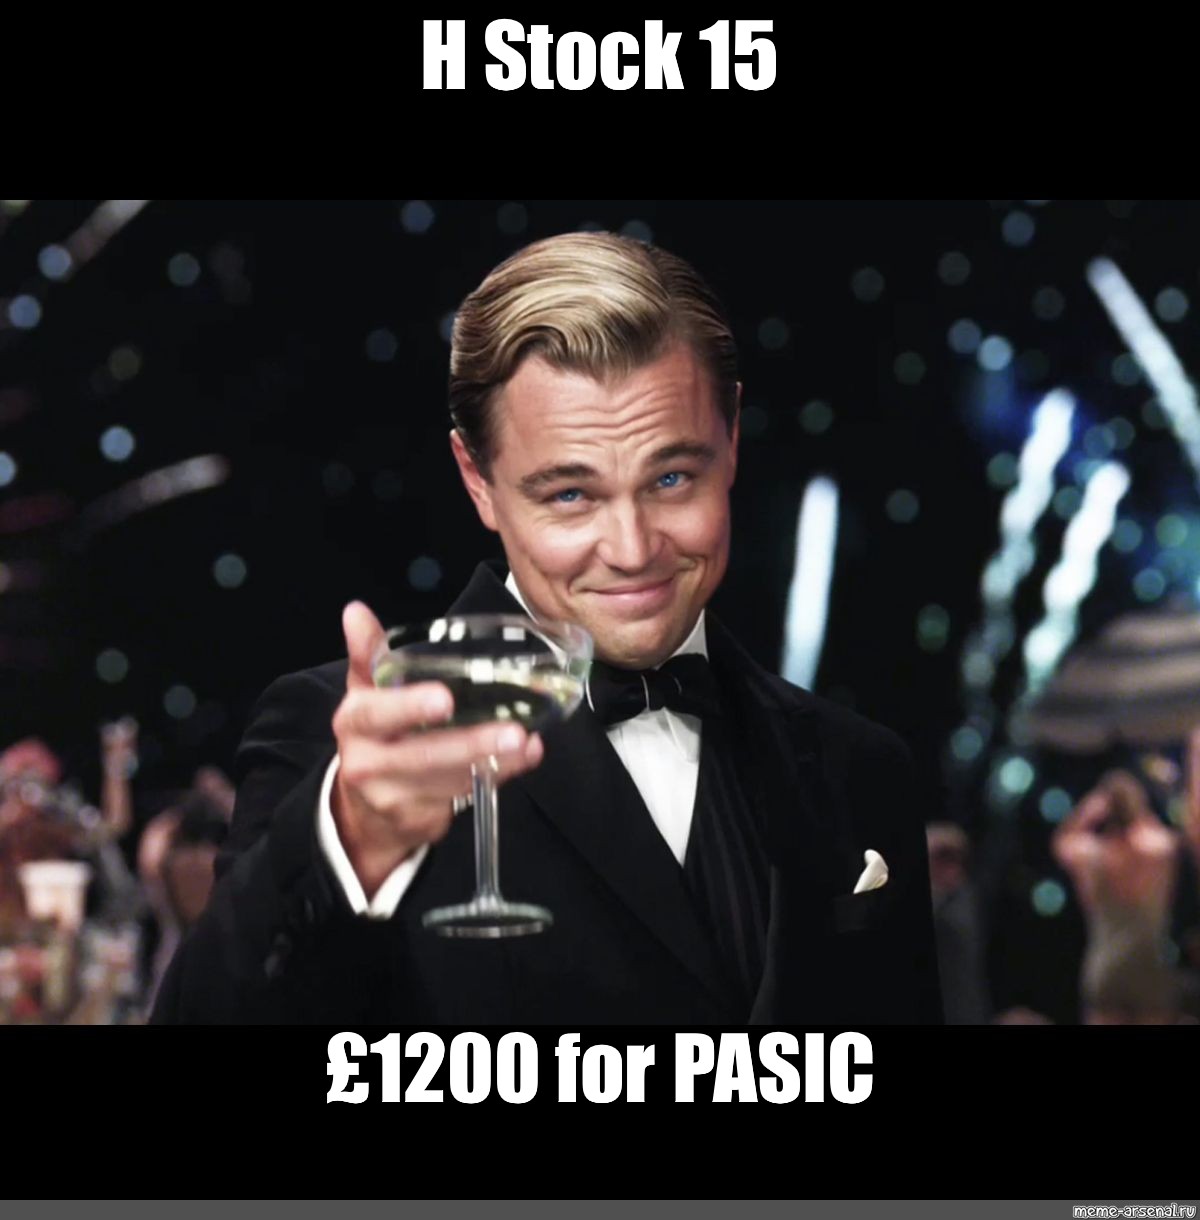 Meme "H Stock 15 £1200 for PASIC" All Templates